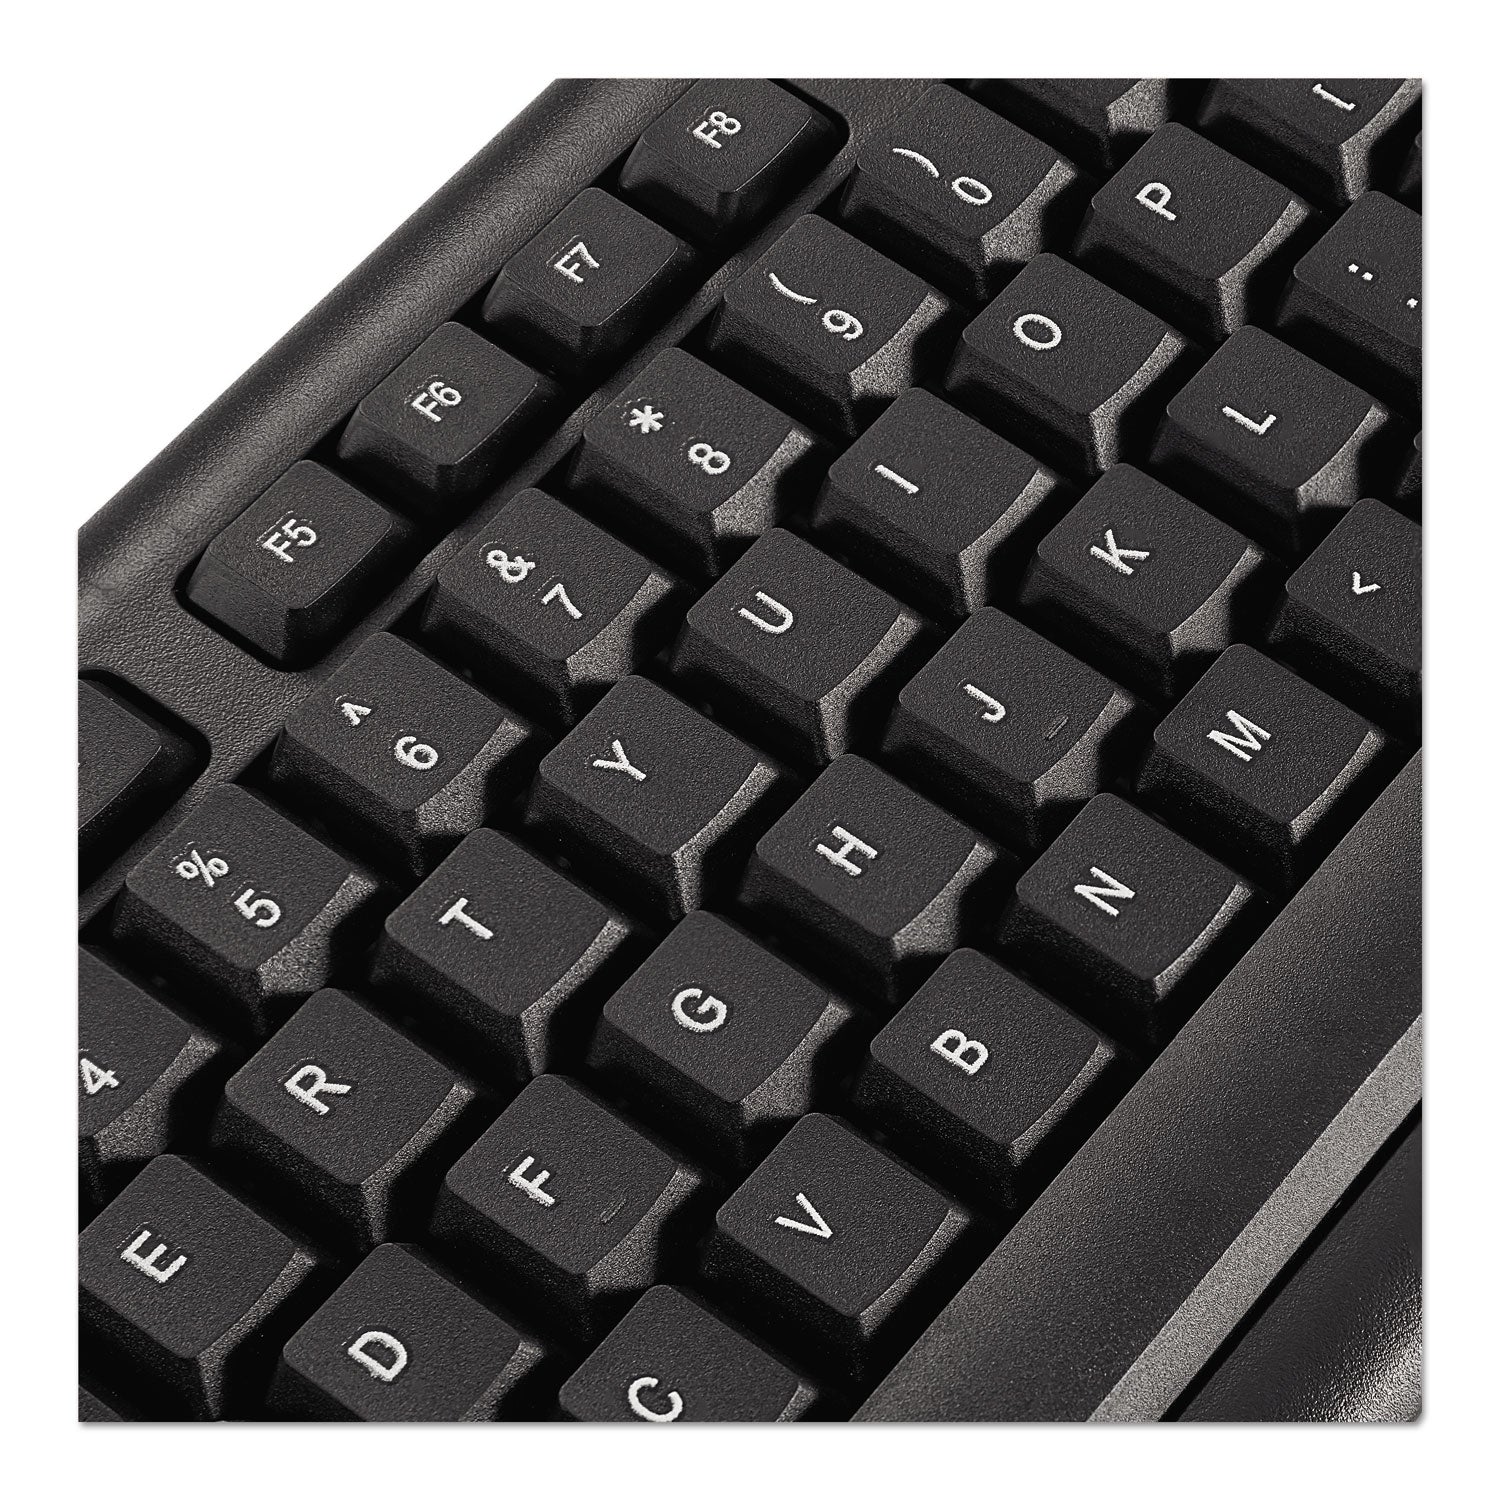 slimline-keyboard-and-mouse-usb-20-black_ivr69202 - 3